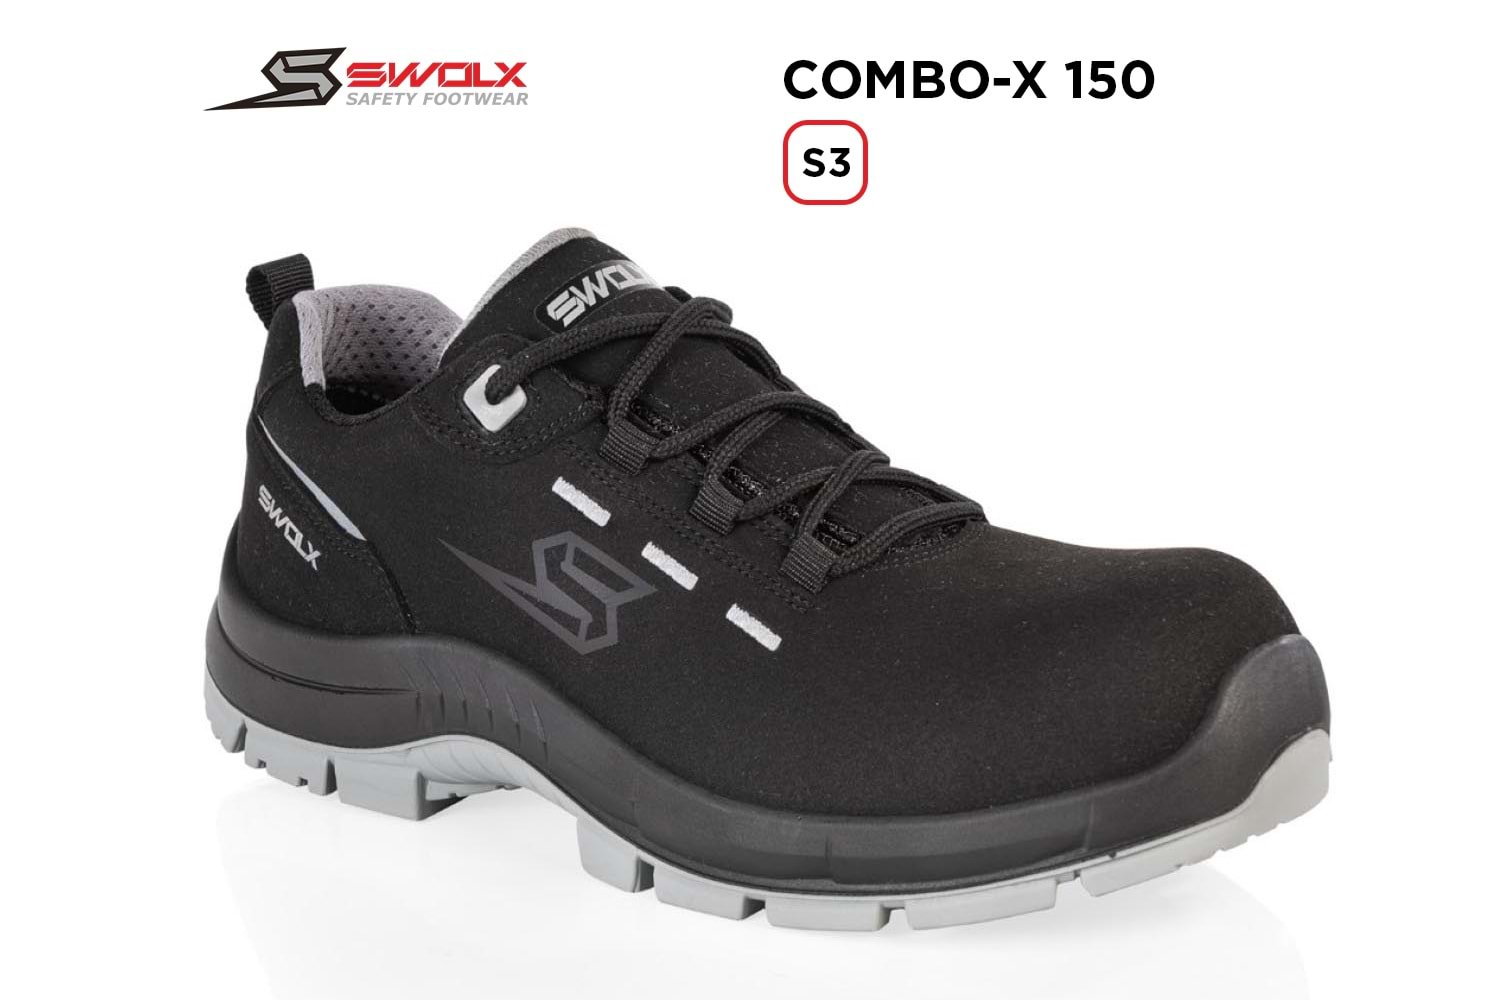 Swolx İş Ayakkabısı - Combo-X 150 S3 - 46